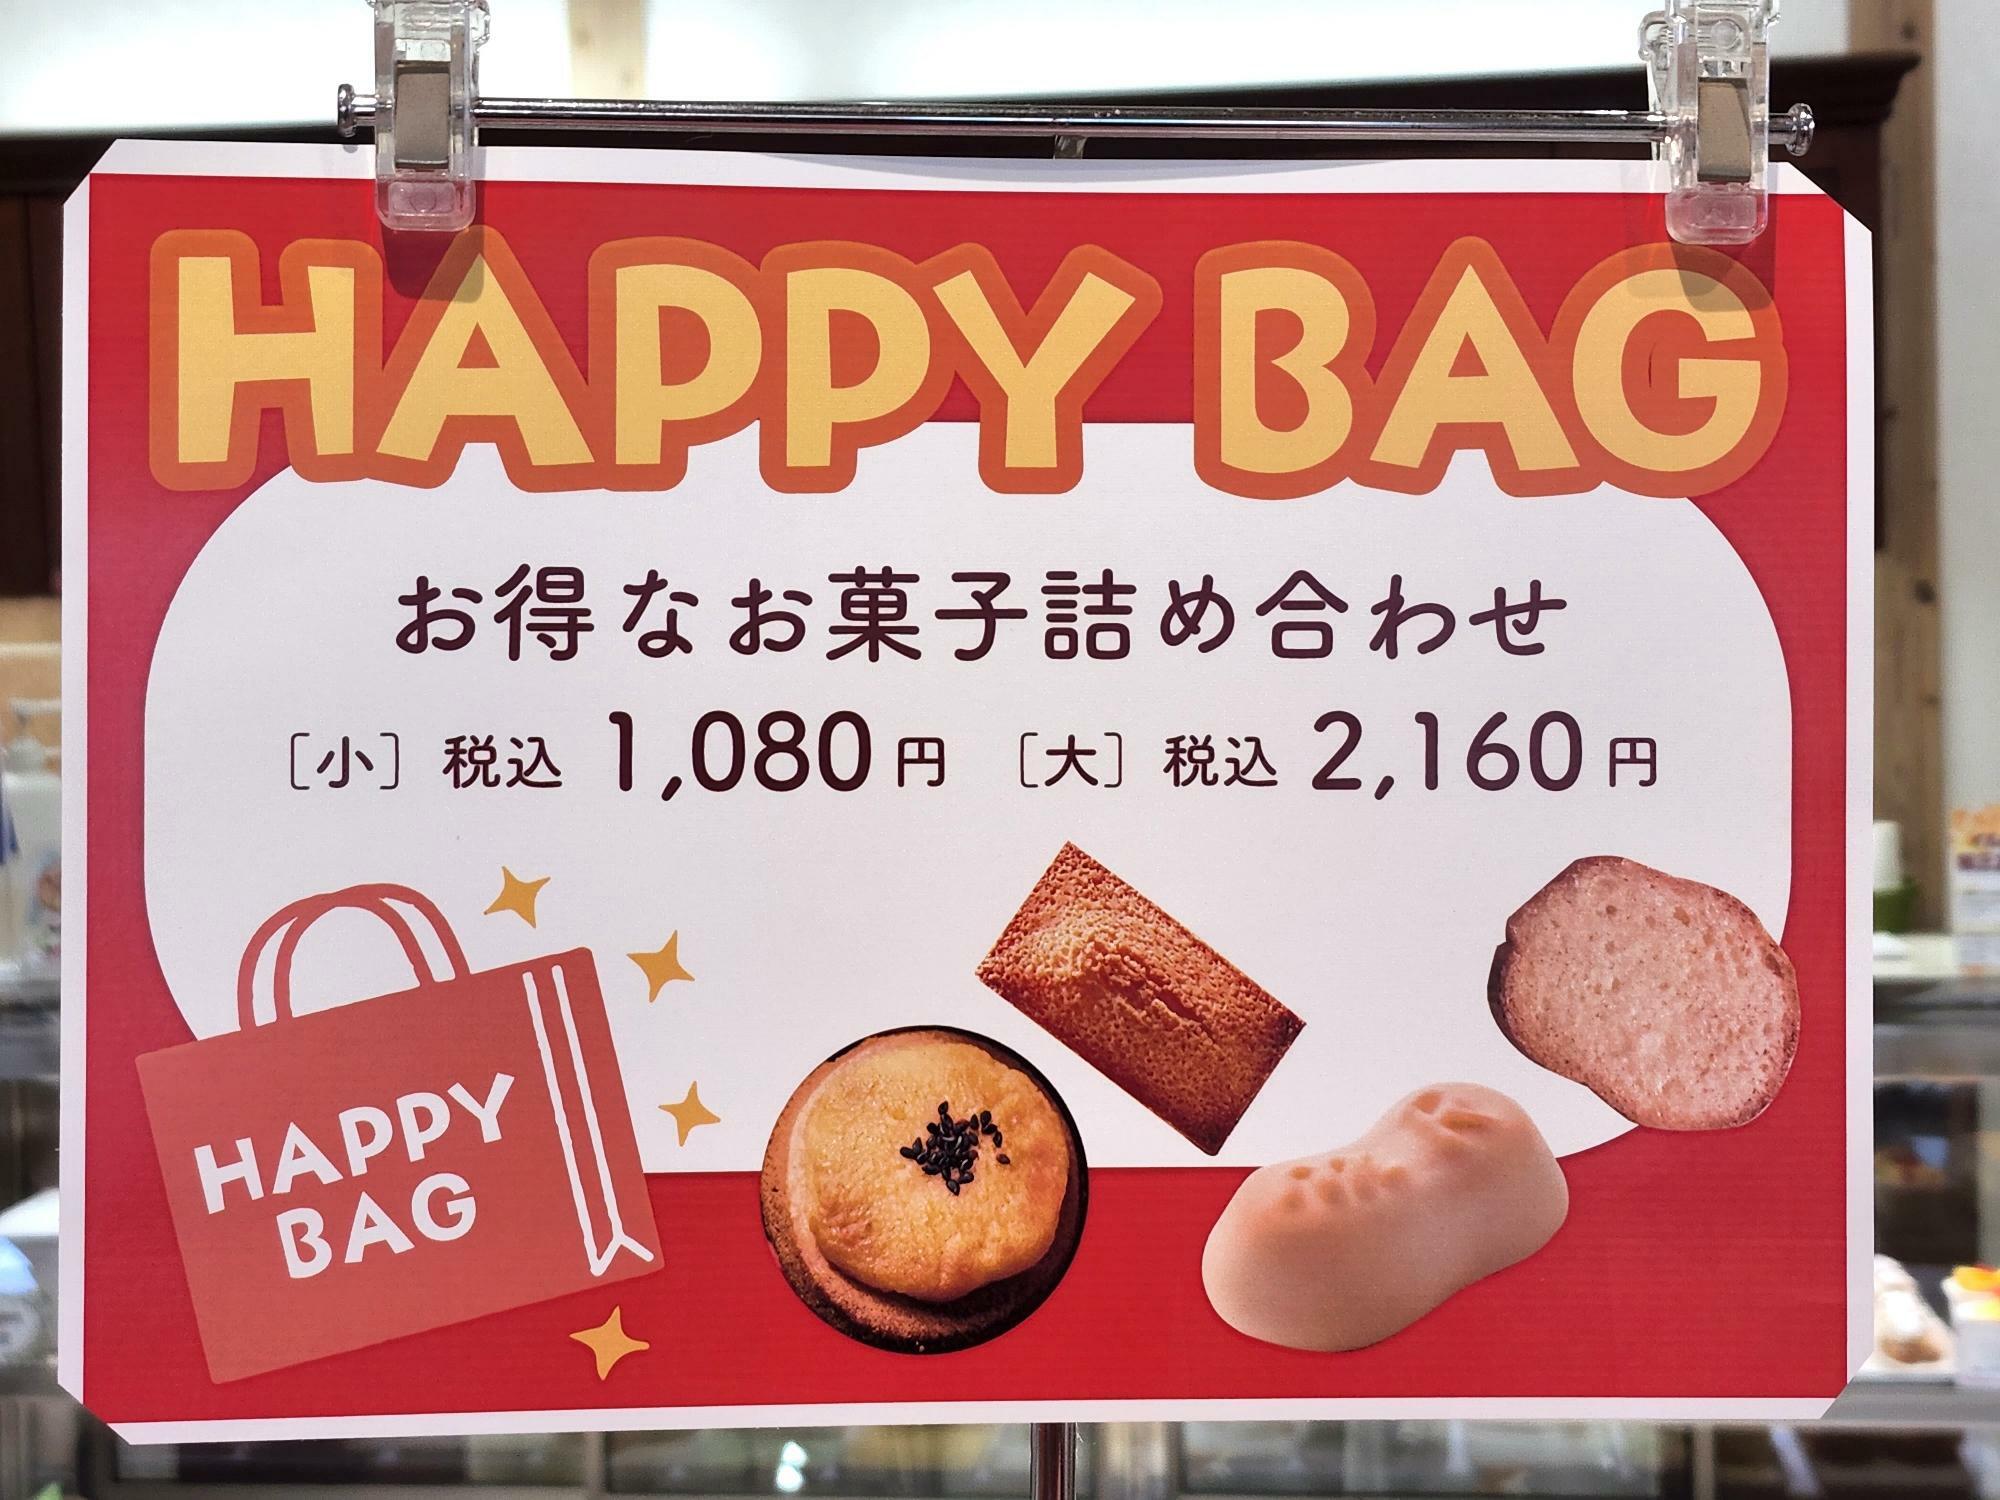 移転フェア商品「HAPPY BAG」。